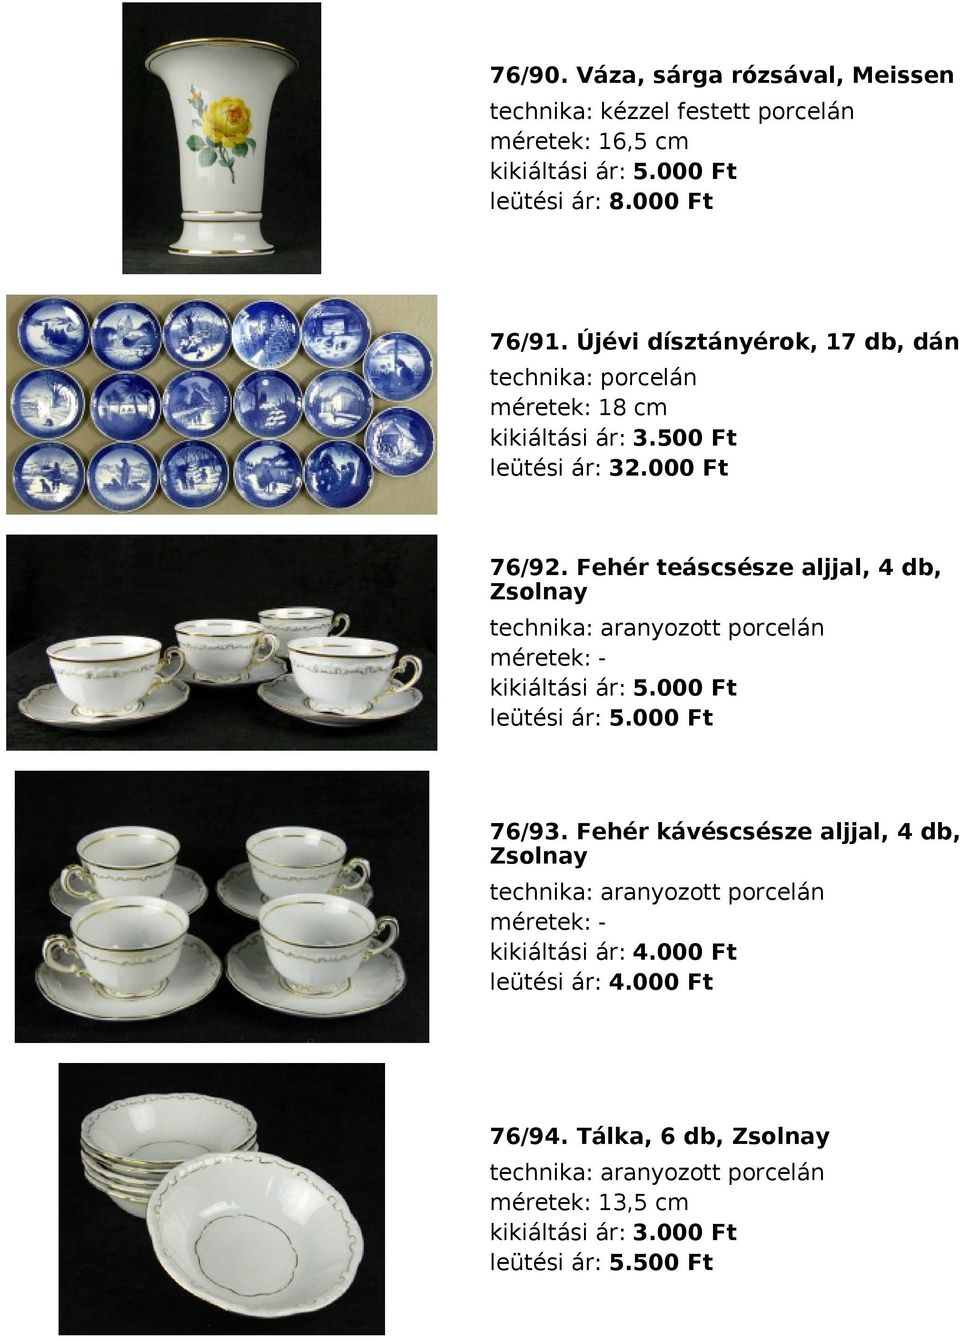 Fehér teáscsésze aljjal, 4 db, Zsolnay technika: aranyozott porcelán méretek: kikiáltási ár: 5.000 Ft leütési ár: 5.000 Ft 76/93.